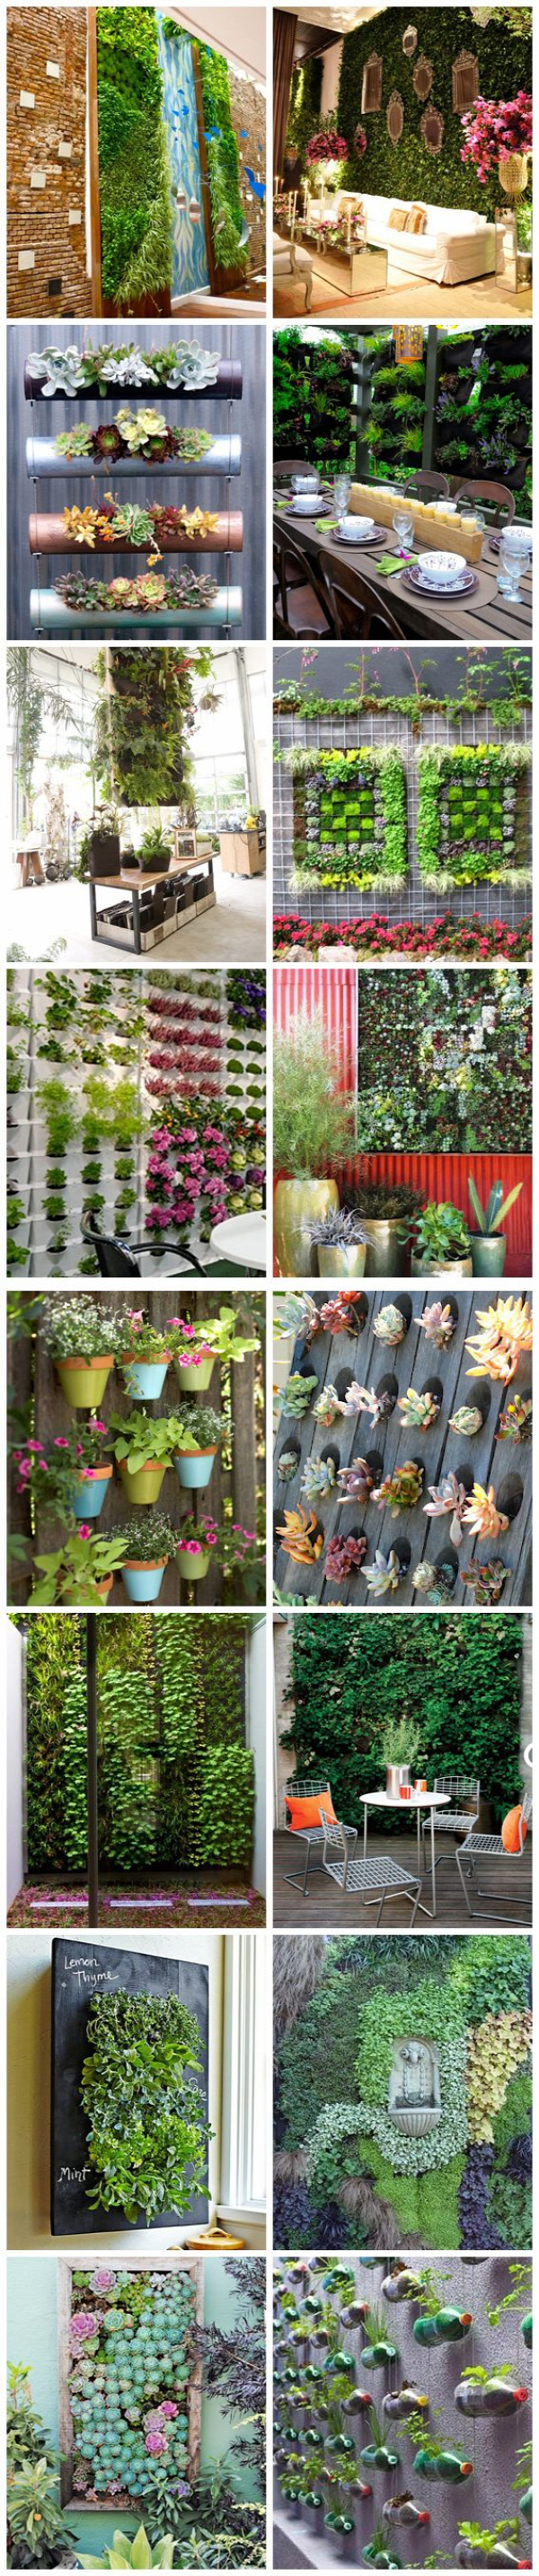 Boas ideias para jardibs verticais. Acho essa opção de jardim ótima para quem não tem muito espaço mas gostaria de um pouco de verde em casa.